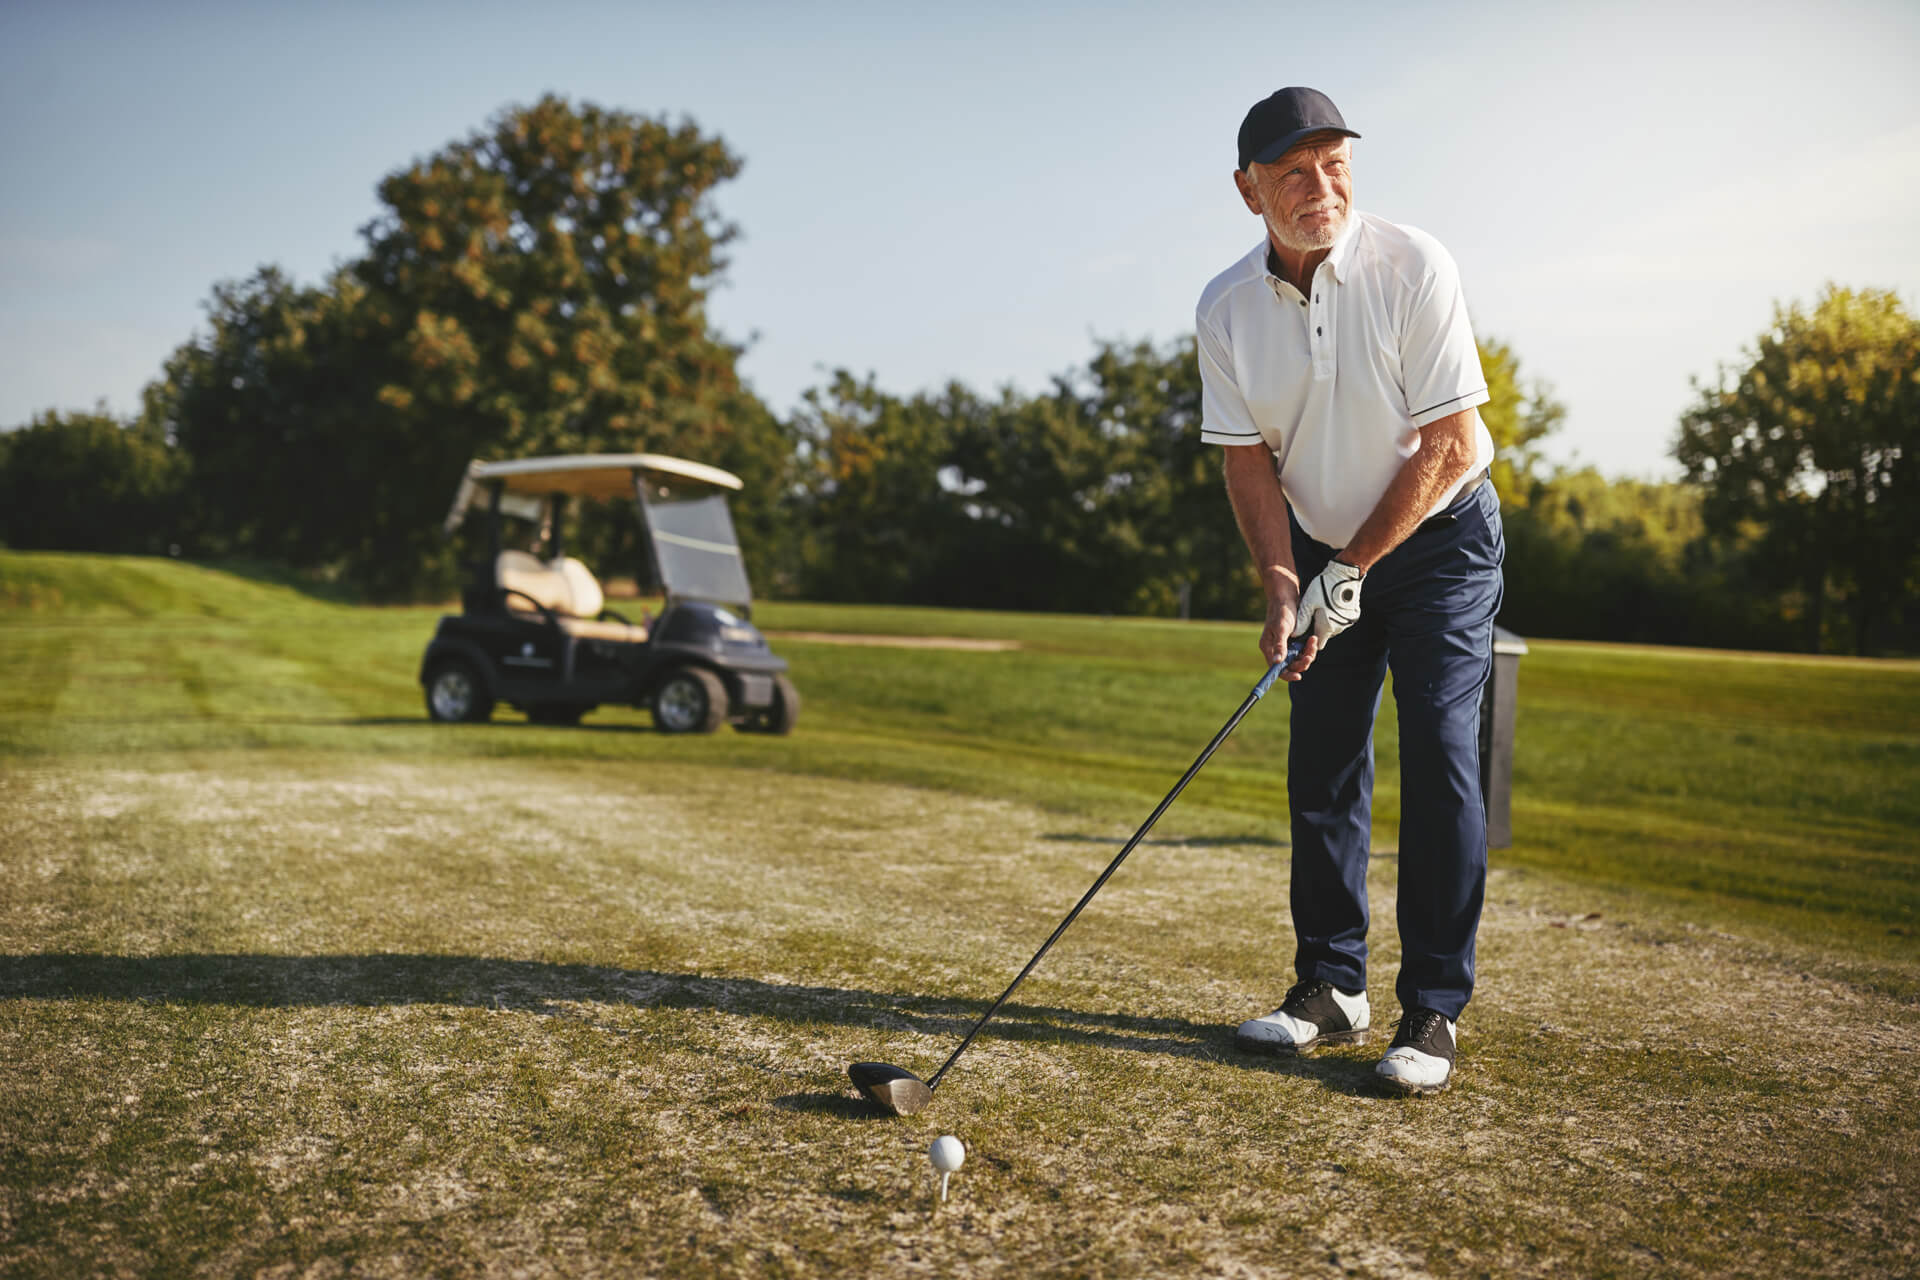 Gegen Inkontinenz hilft Beckenbodentraining - Golfspielen und Sport unbeschwert geniessen